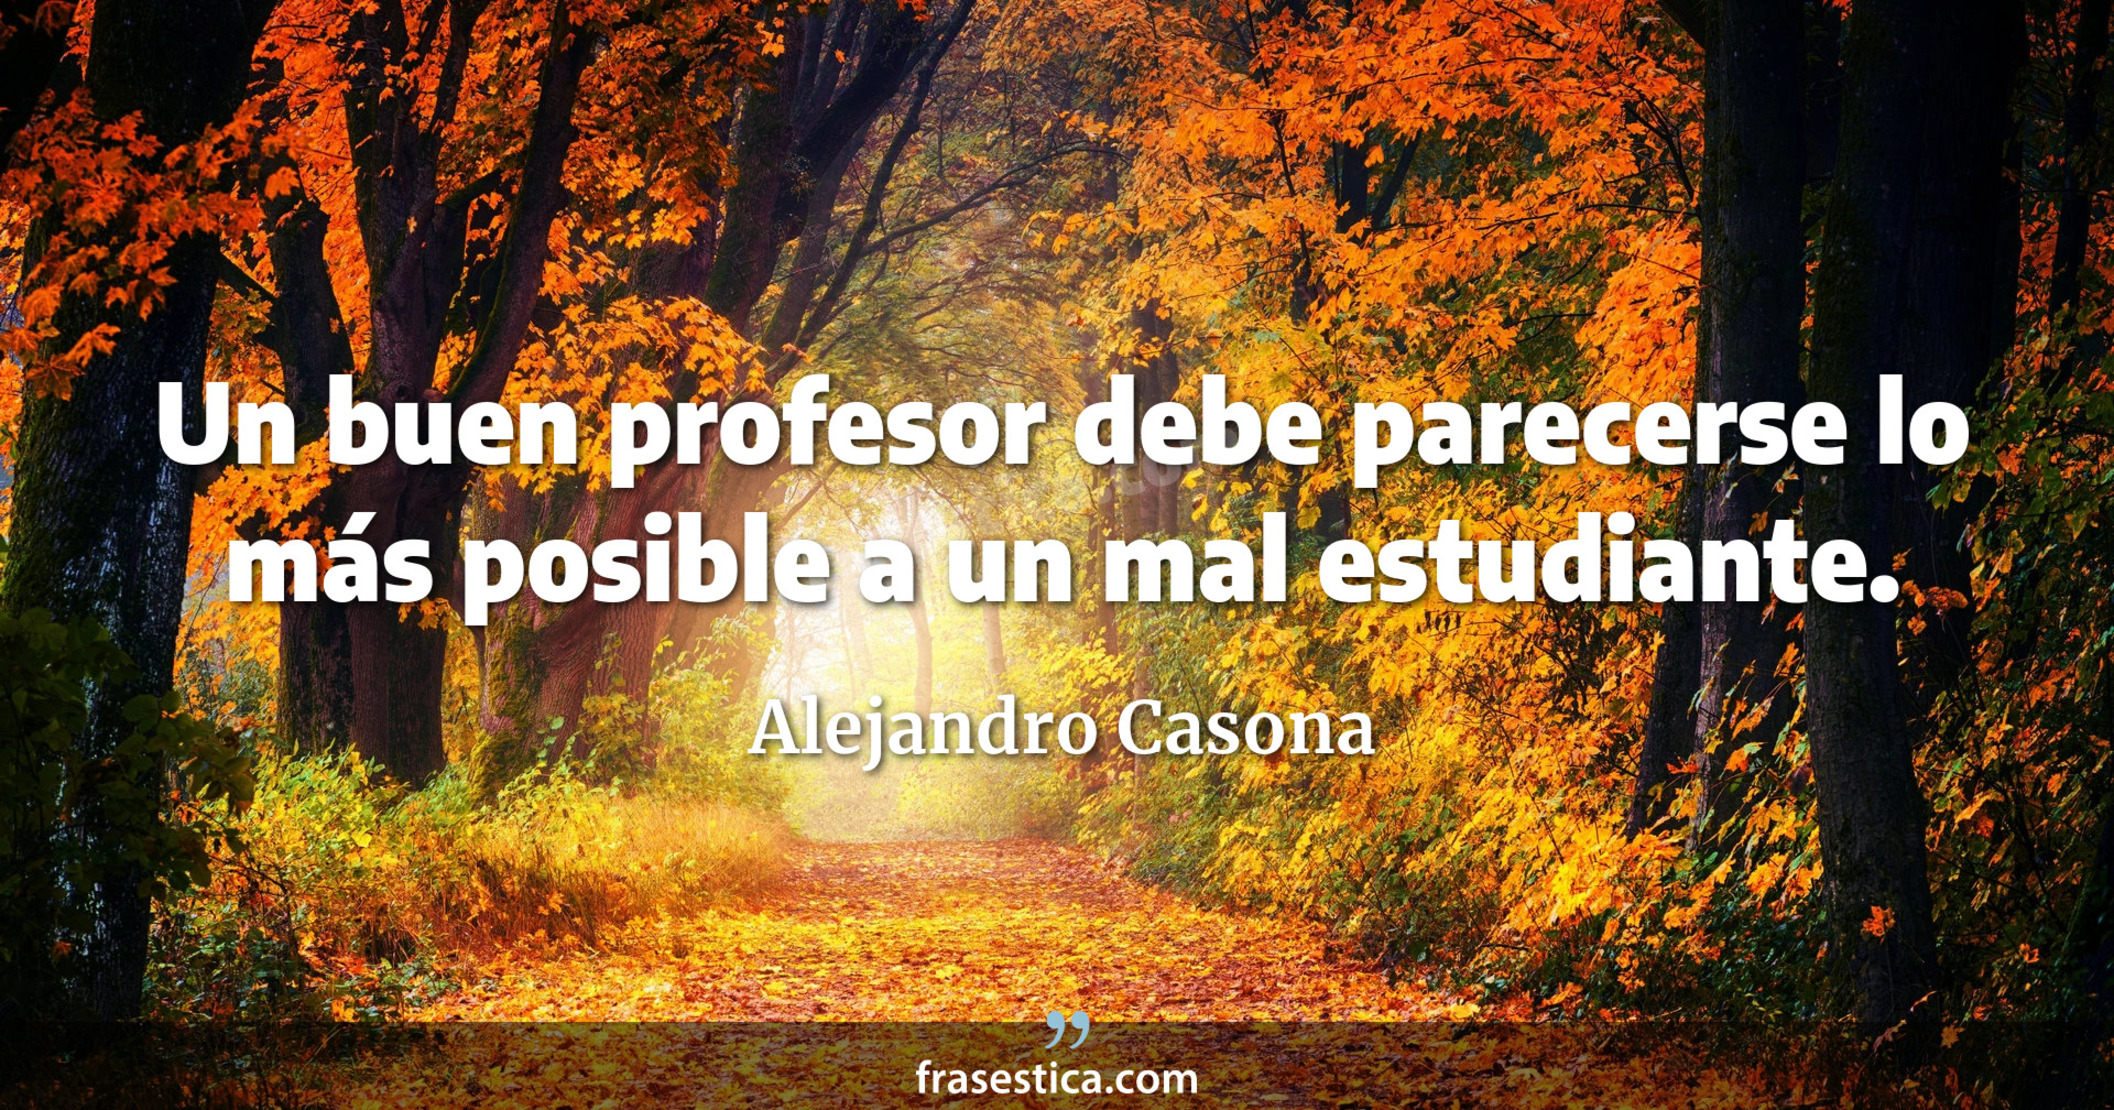 Un buen profesor debe parecerse lo más posible a un mal estudiante. - Alejandro Casona